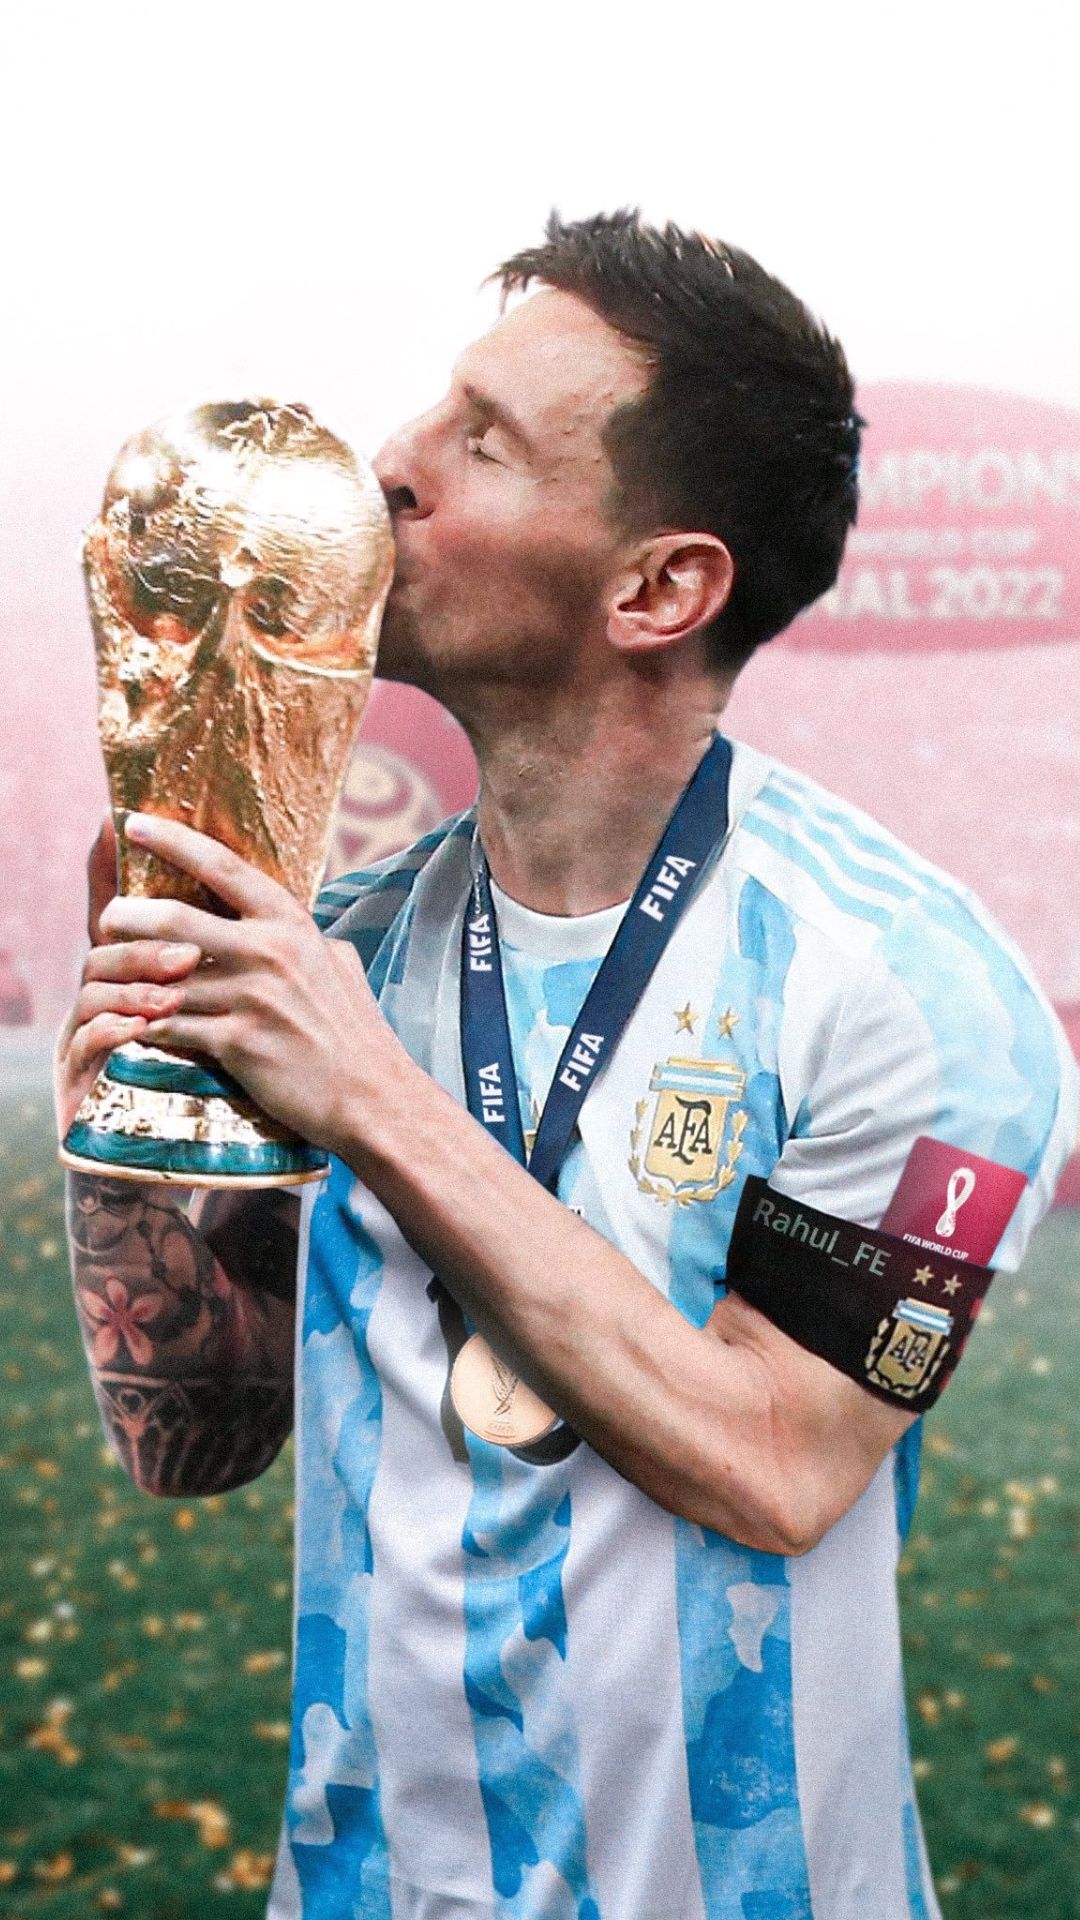 Messi Argentina Wallpapers sẽ cho bạn trải nghiệm xem những bức ảnh tiêu biểu nhất về Messi, kèm theo trang phục và đội bóng mà anh đã từng khoác áo. Tất cả đều được tái hiện từng chi tiết trong bức hình để bạn có thể cảm nhận sự kiêu hãnh và khát khao chiến thắng của Messi.